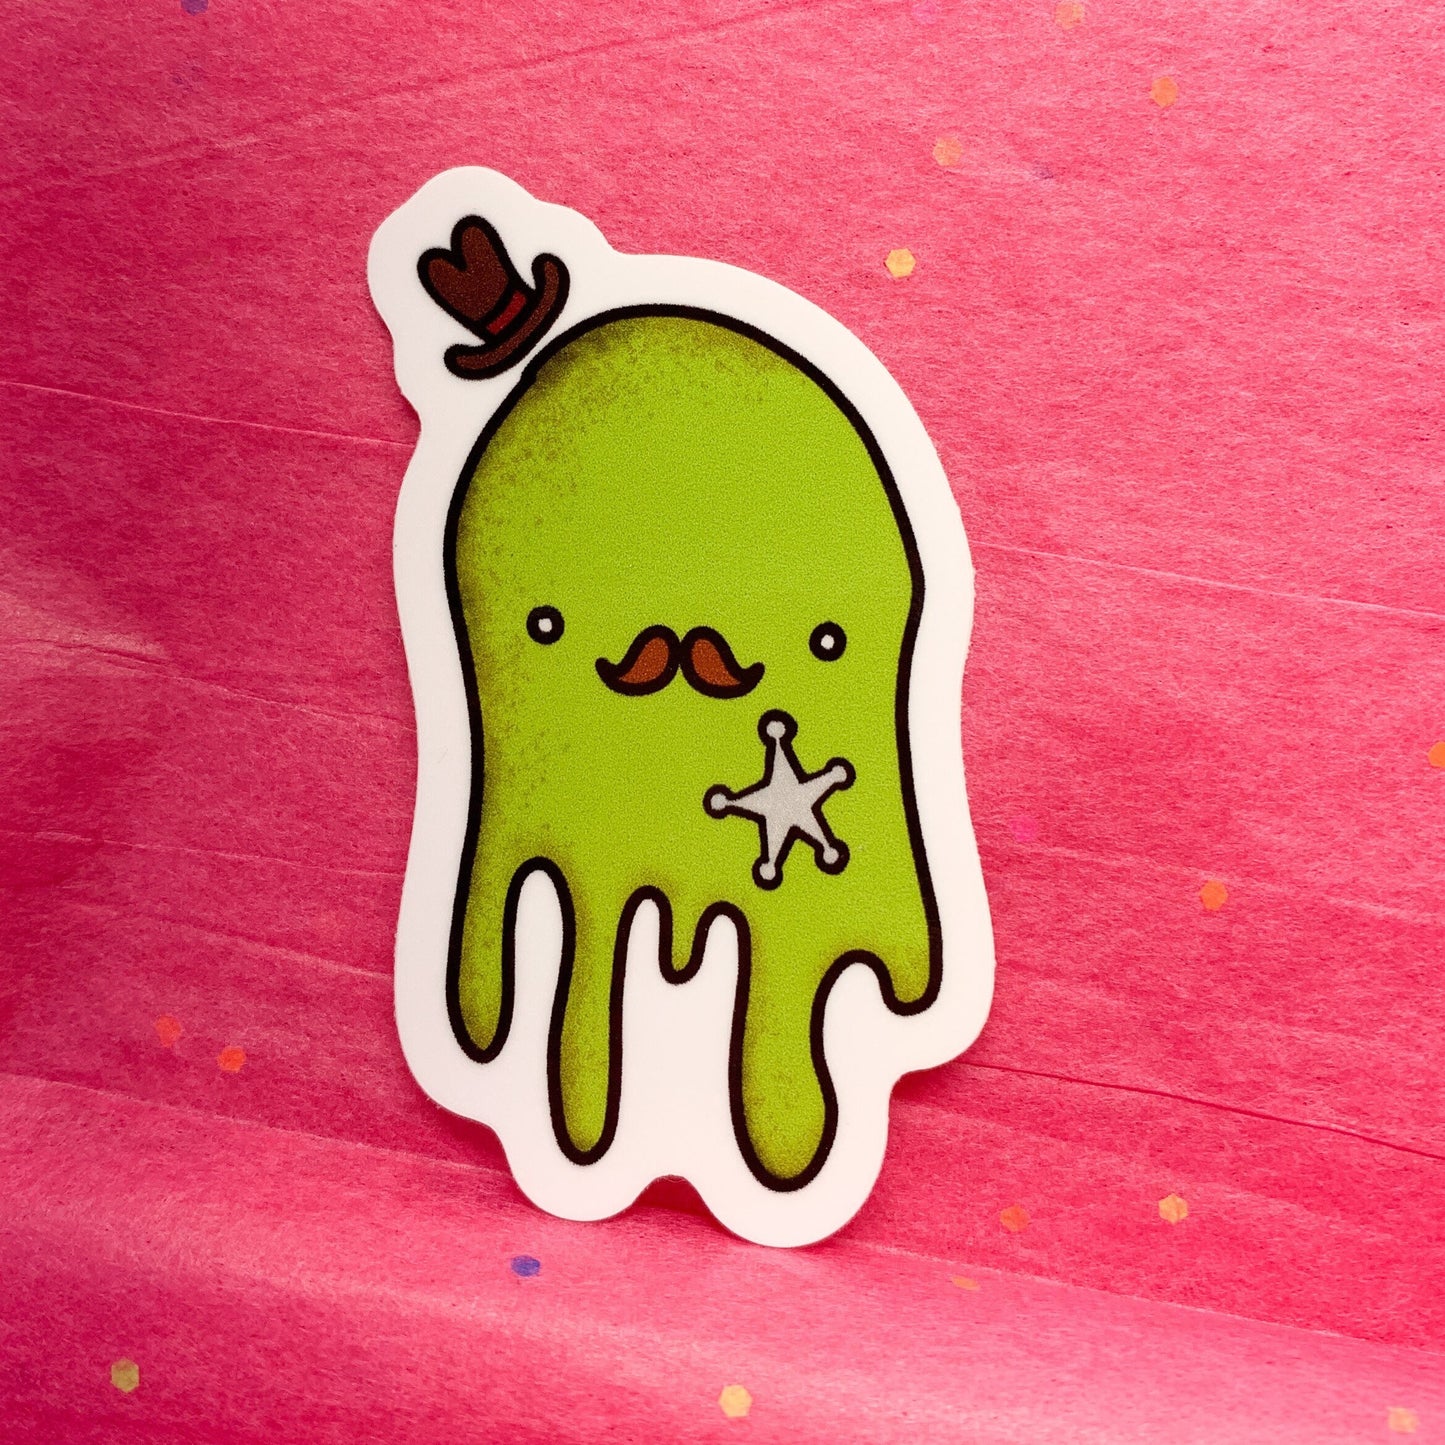 Green Creature Sticker - Sherif Slime - Weird Art - waterproof vinyl